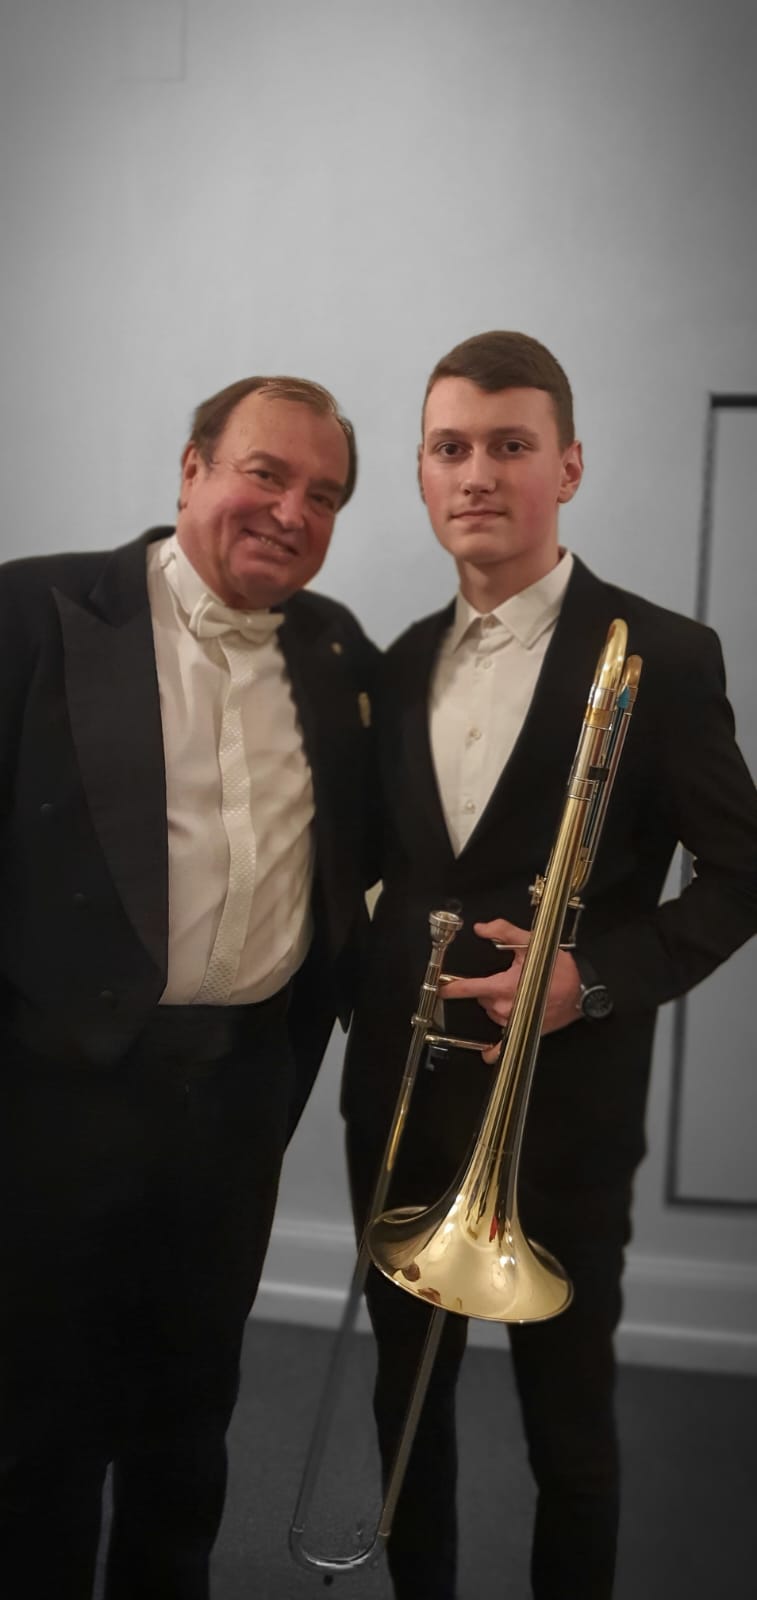 Elevul Darius Dan alături de dirijorul Orchestrei Simfonice Praga 5, domnul Leos Svarovsky